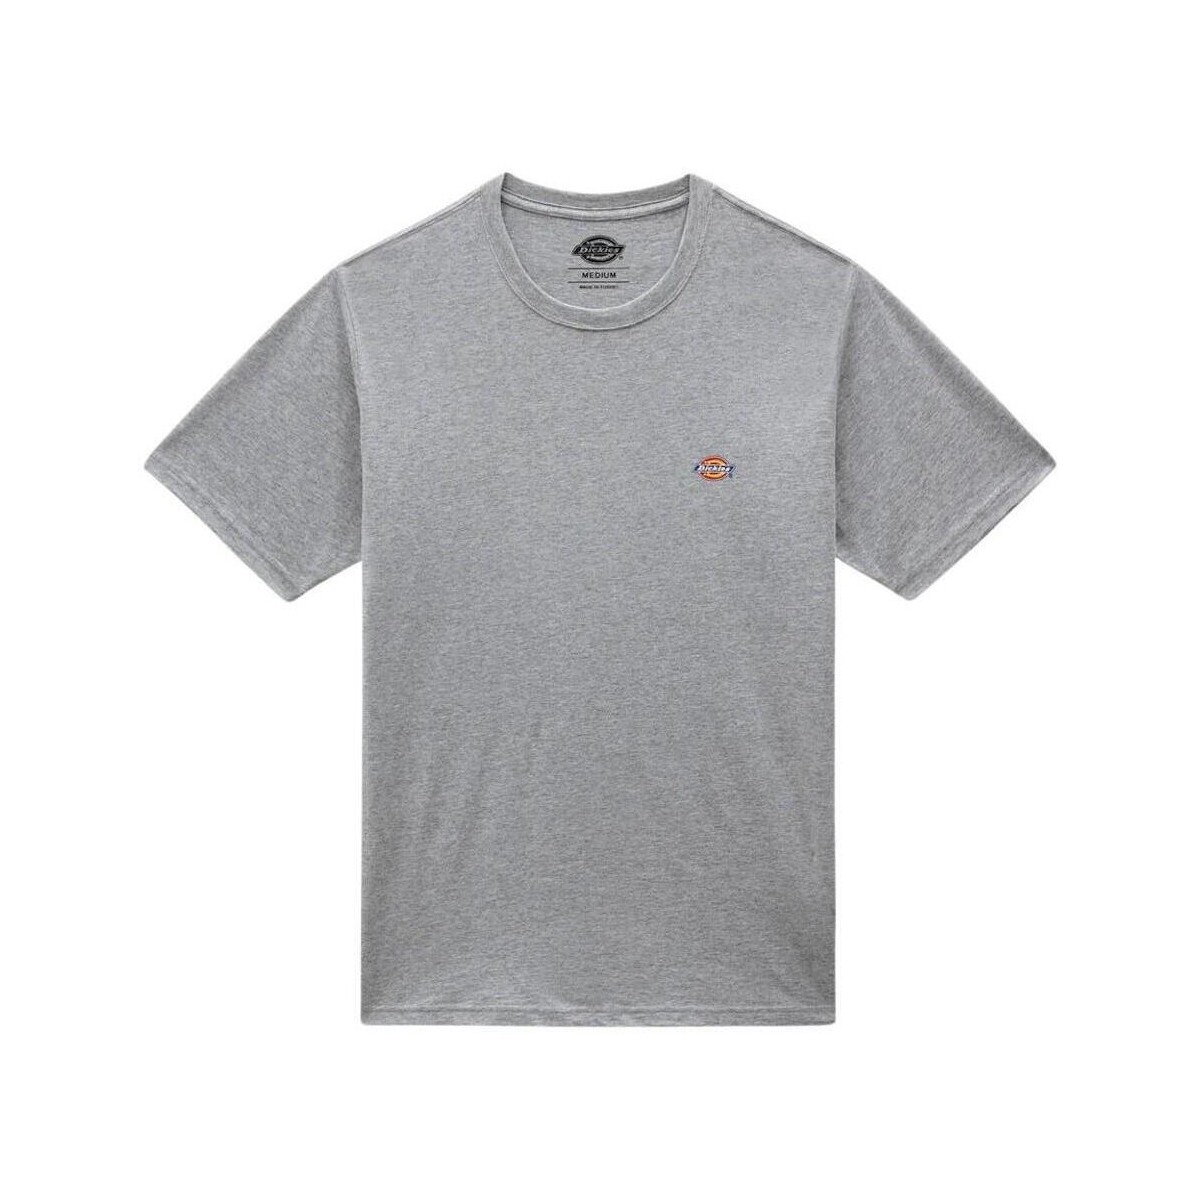 Ruhák Férfi Pólók / Galléros Pólók Dickies Mapleton T-Shirt - Grey Szürke